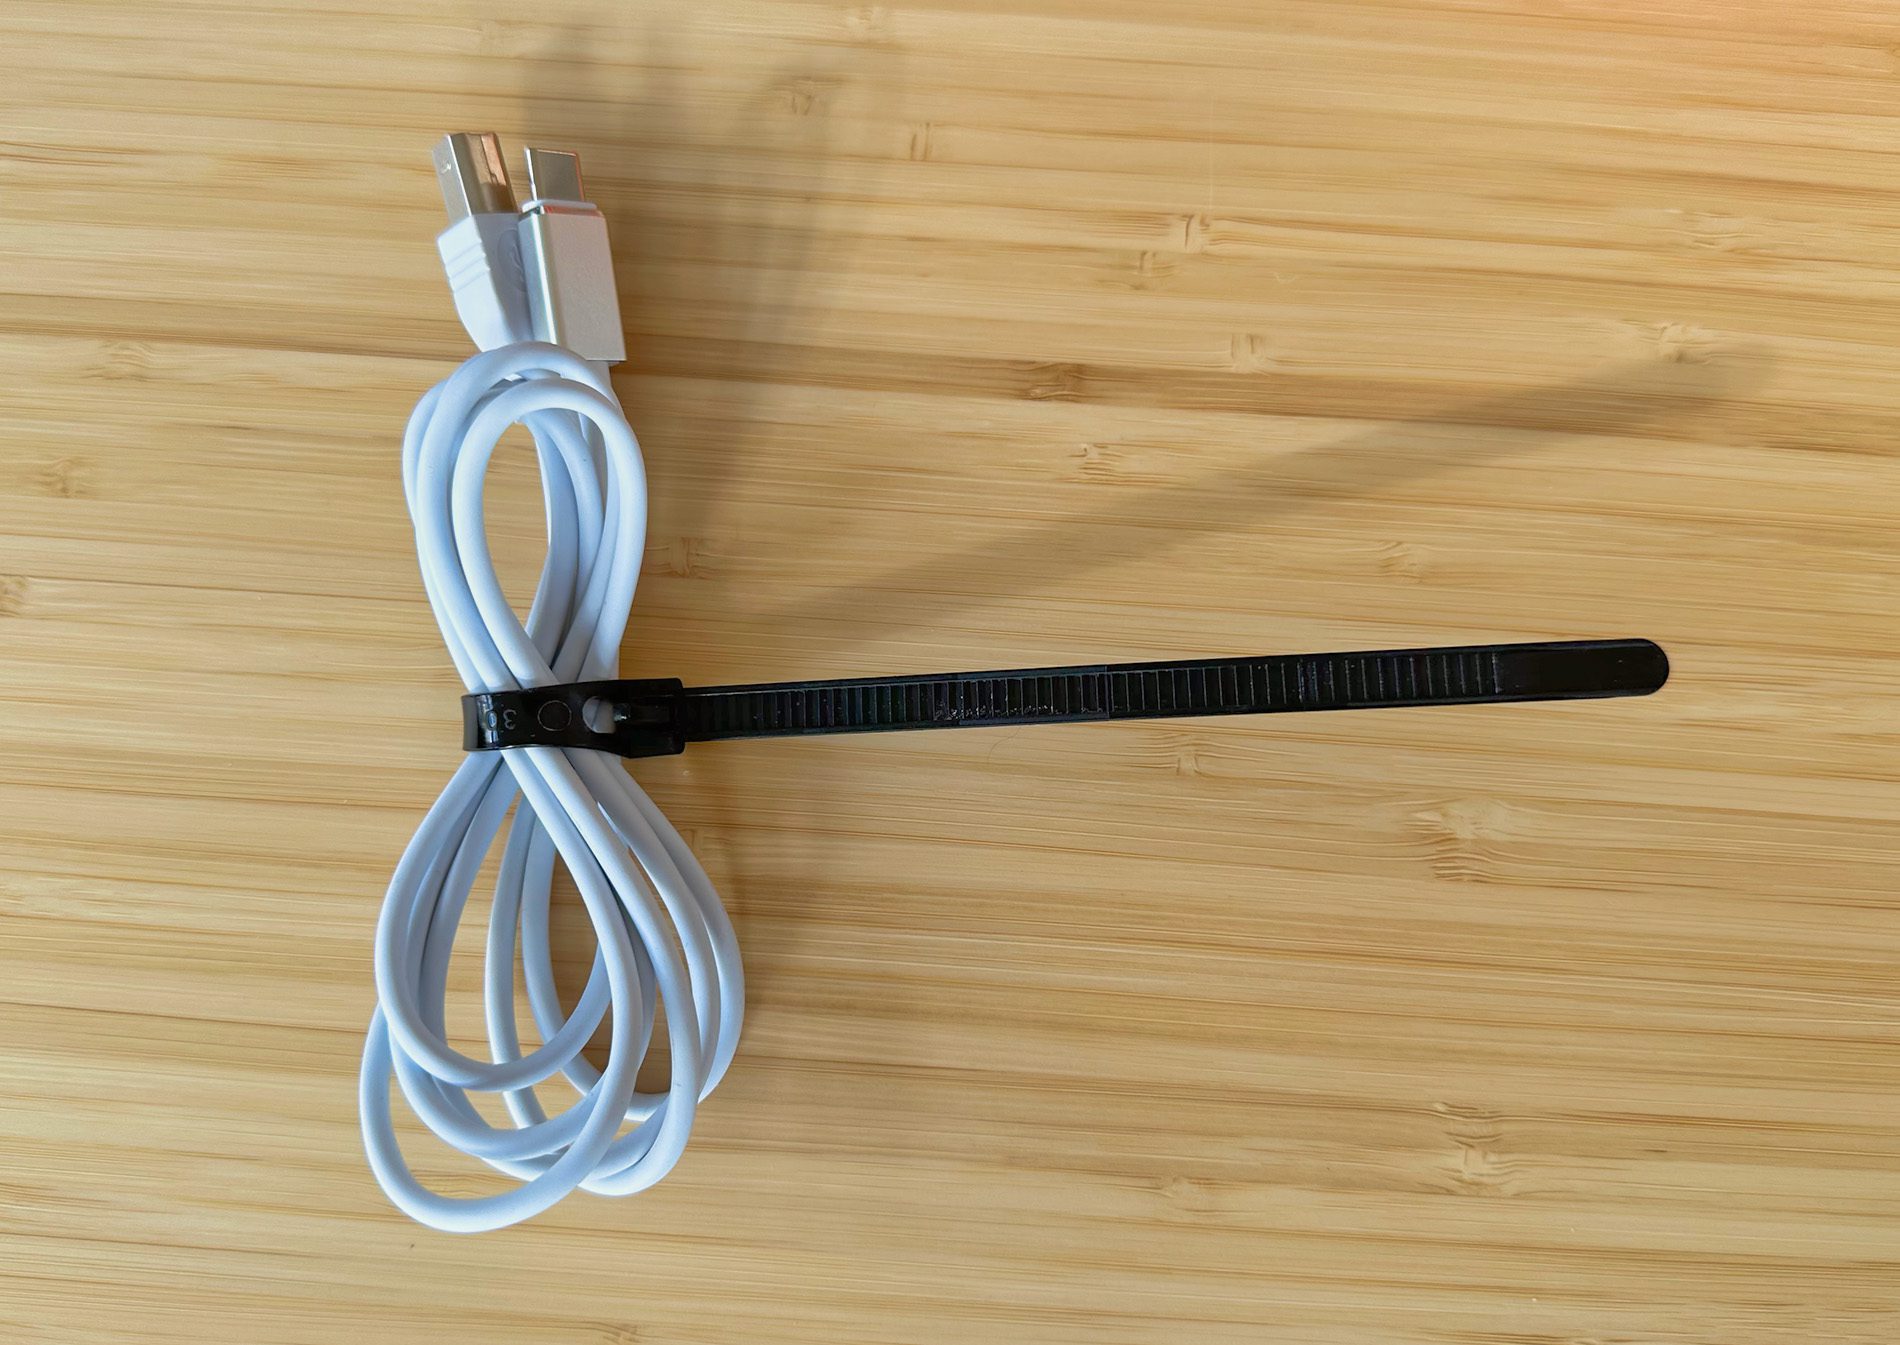 Für kleinere Kabel ist der Kabelbinder etwas lang, aber mich stört das abstehende Ende nicht.